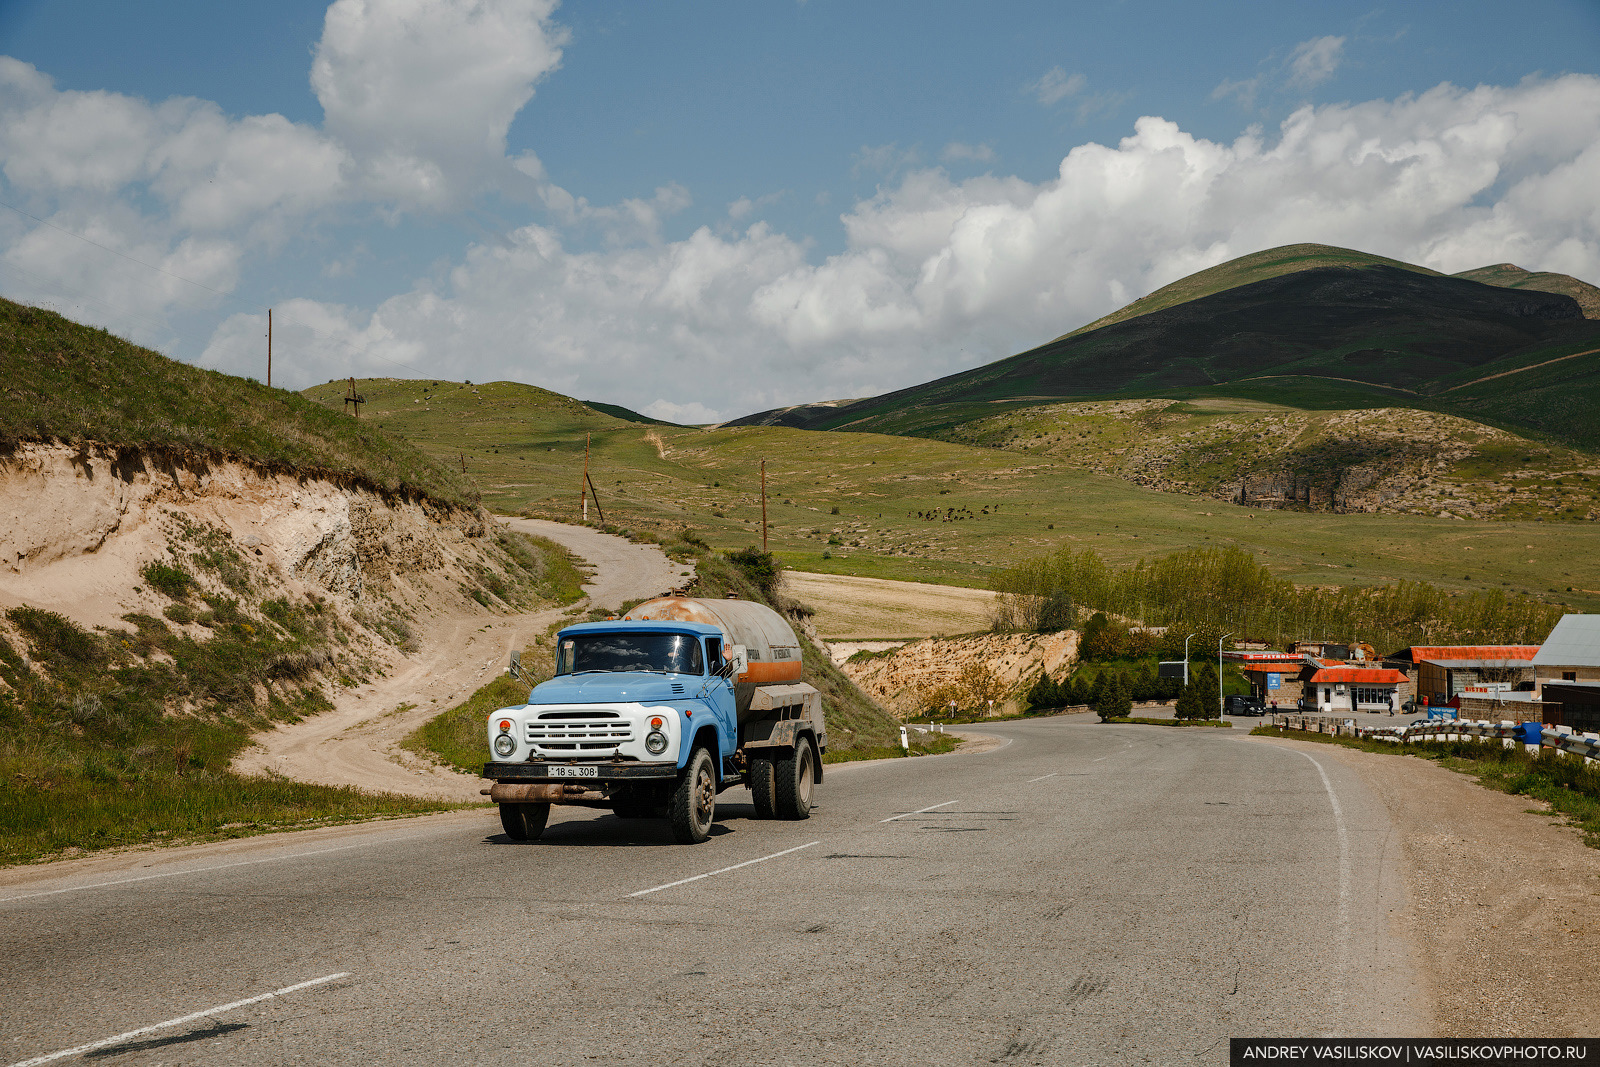 Старые машины в Армении. Путешествие на машине по Армении. Ереван путешествие на машине. Дикий авторынок в Армении.